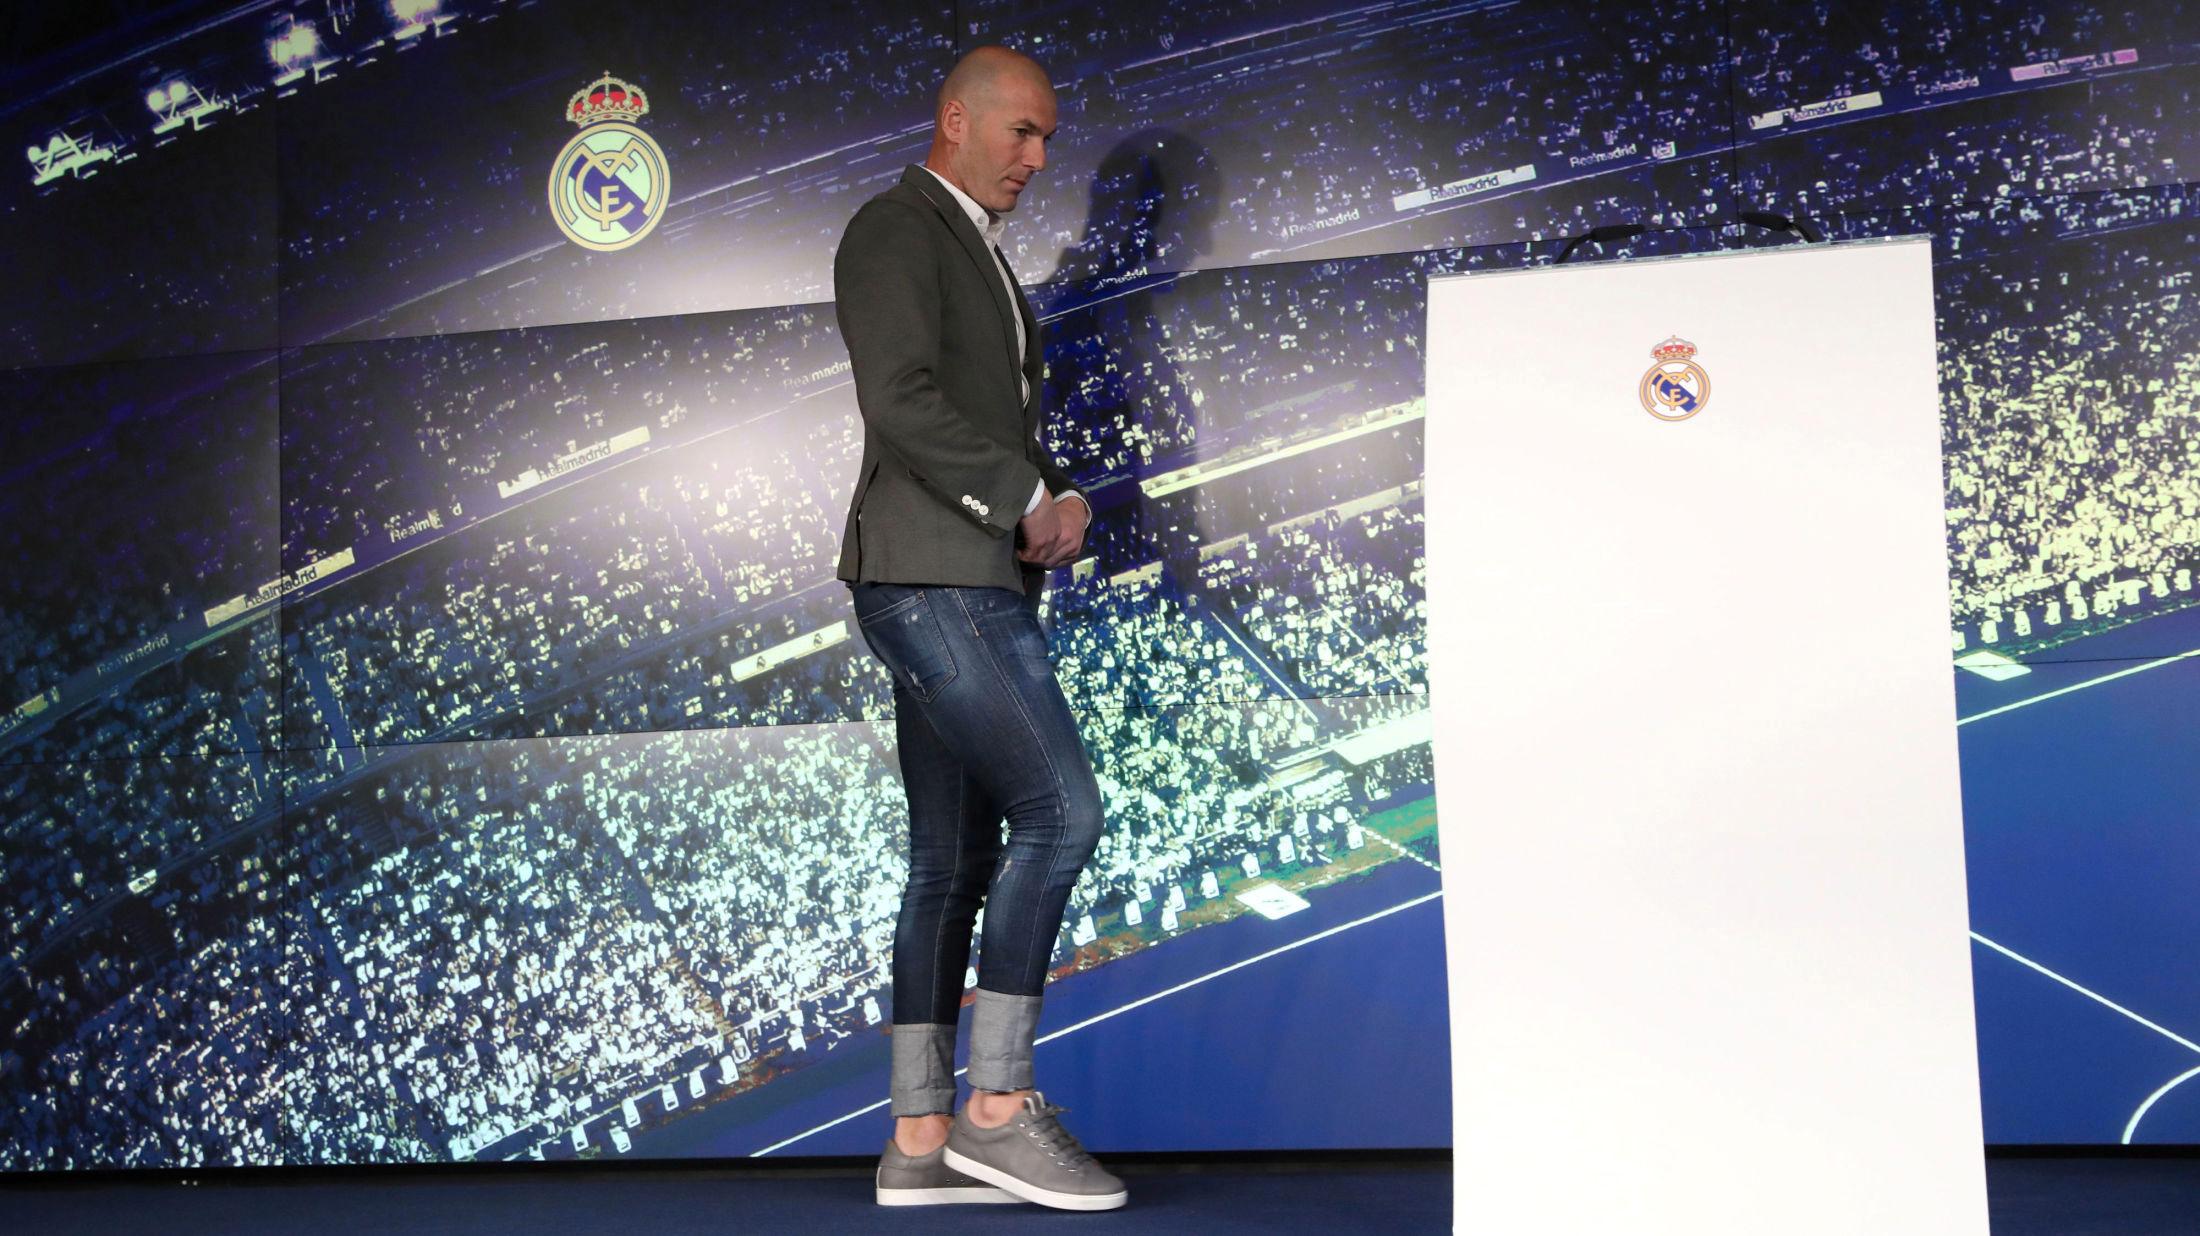 FÅR KRITIKK FOR BUKSA: Flere fans mener Zinédine Zidane bommet med buksa. Foto: Susana Vera/REUTERS.